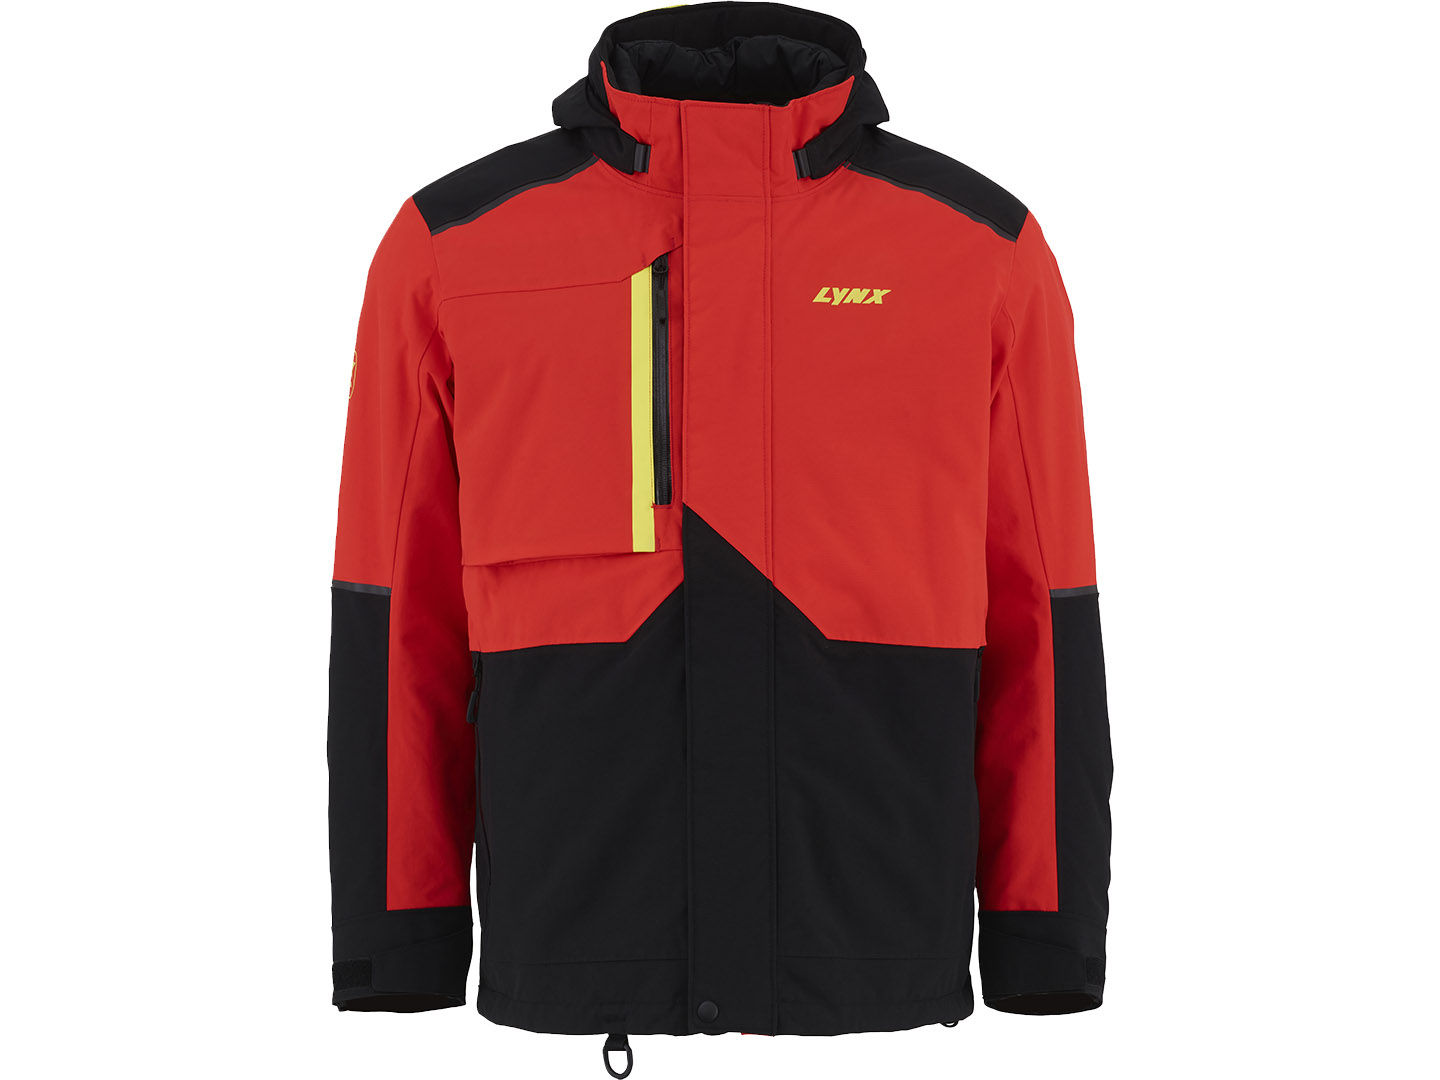 Punainen ja musta Stamina Trail takki